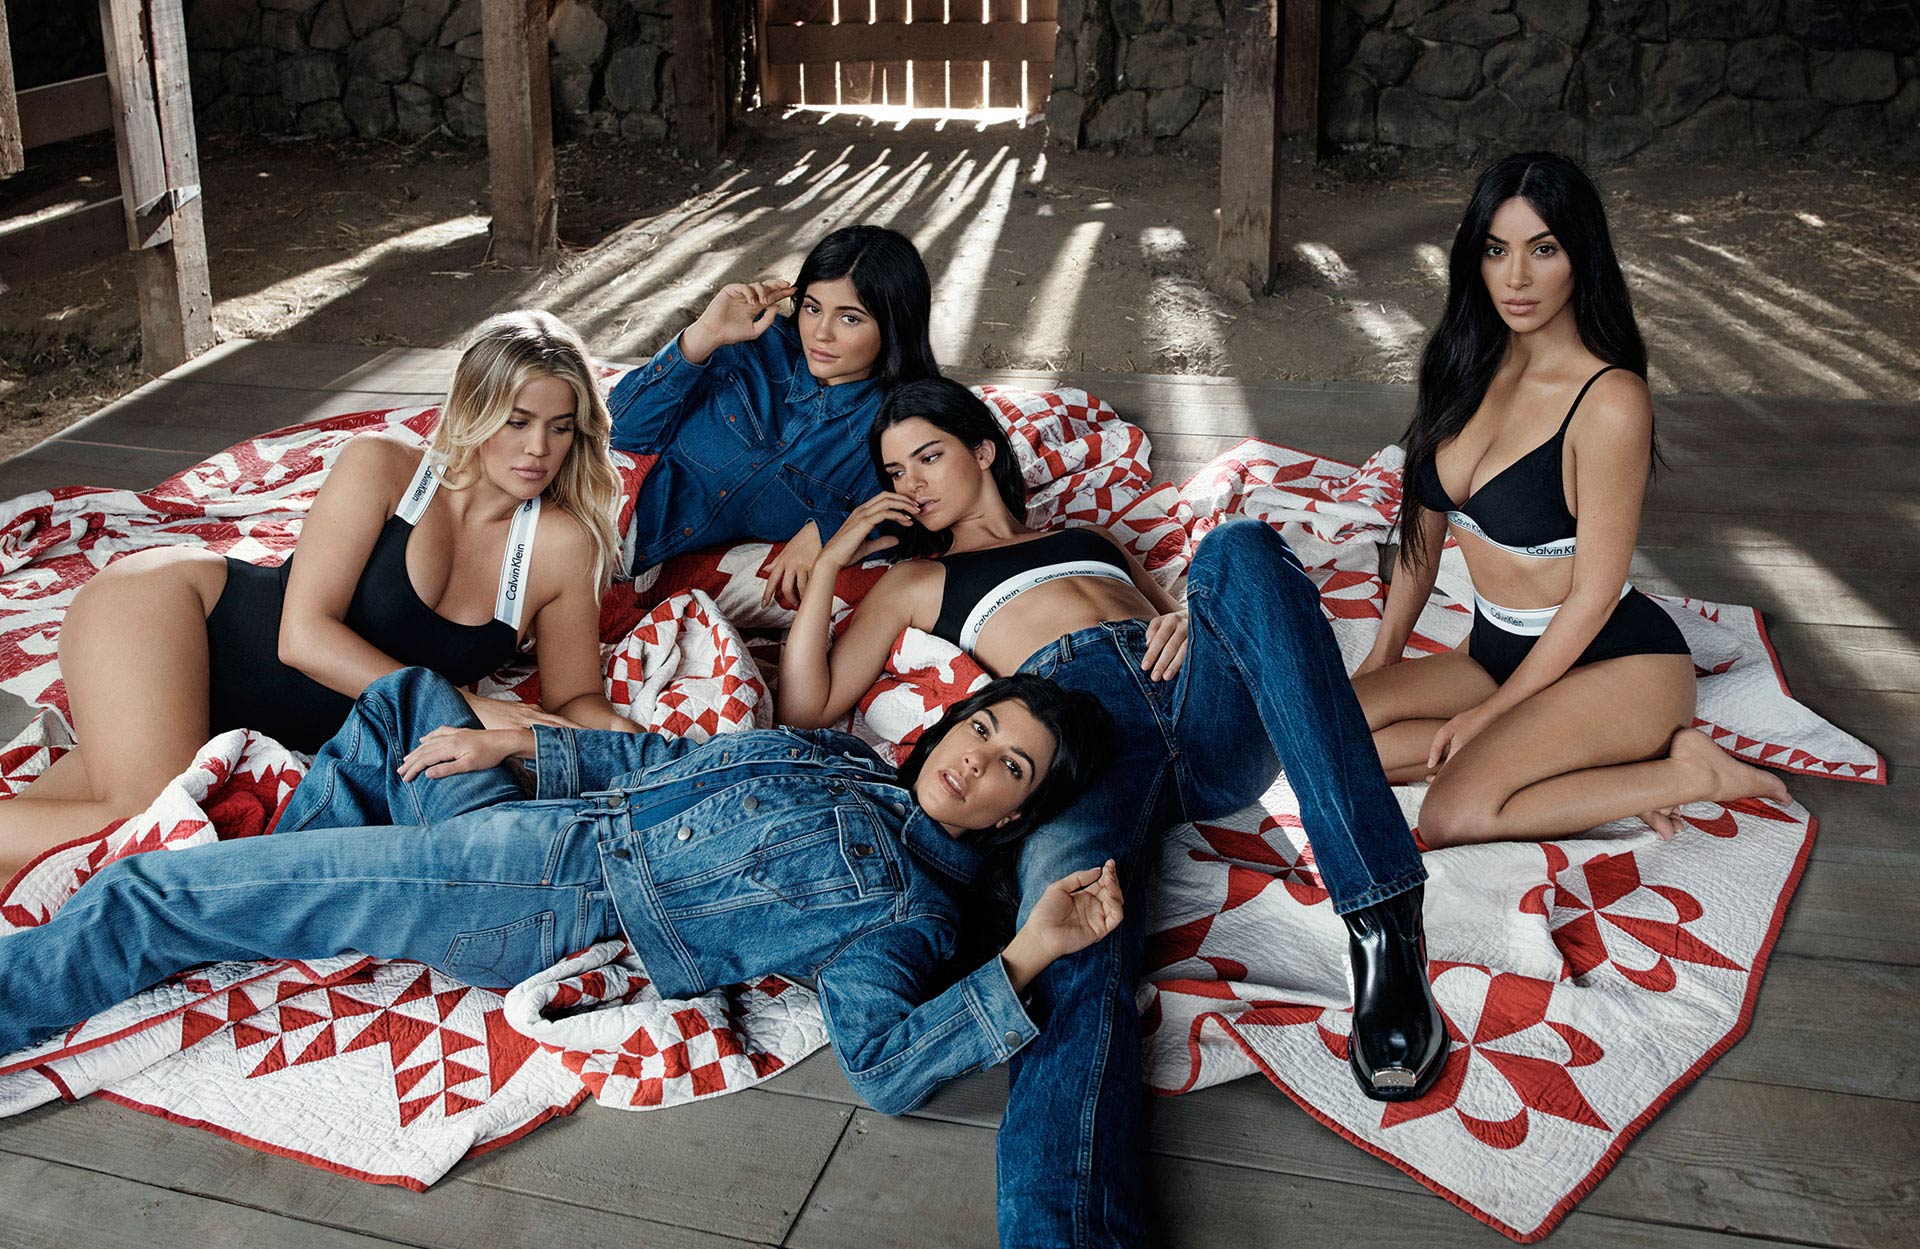 Coleção underwear estrelada pelas irmãs Kardashian/Jenner chegam à Calvin Klein